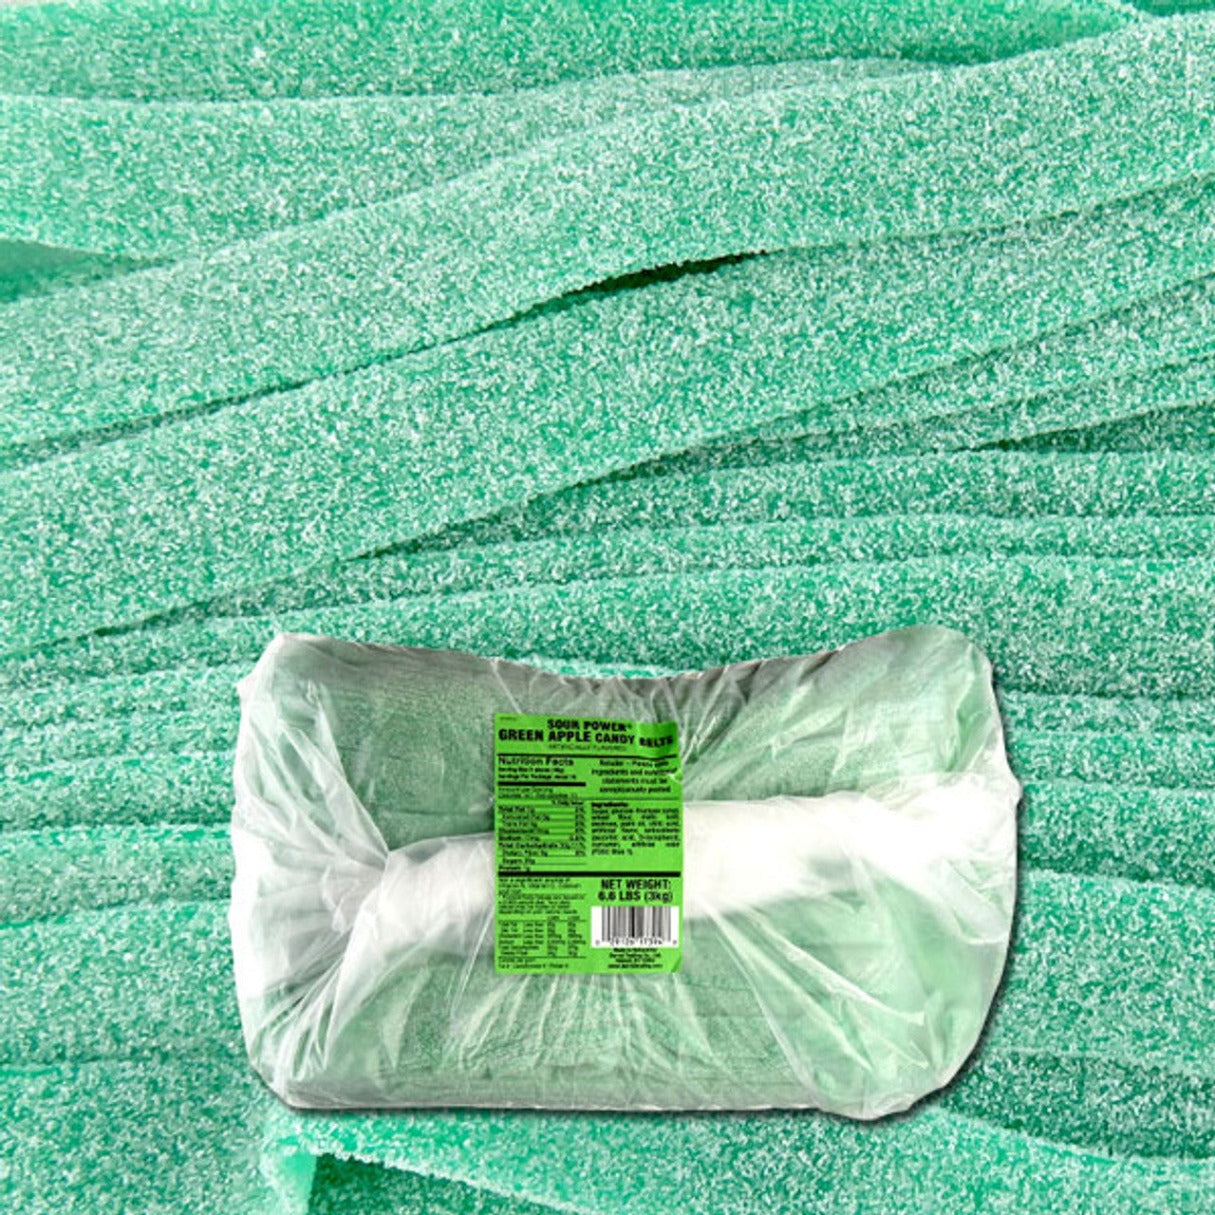 Dorval Sour Power Belts Green Apple Bag - 6.6lb